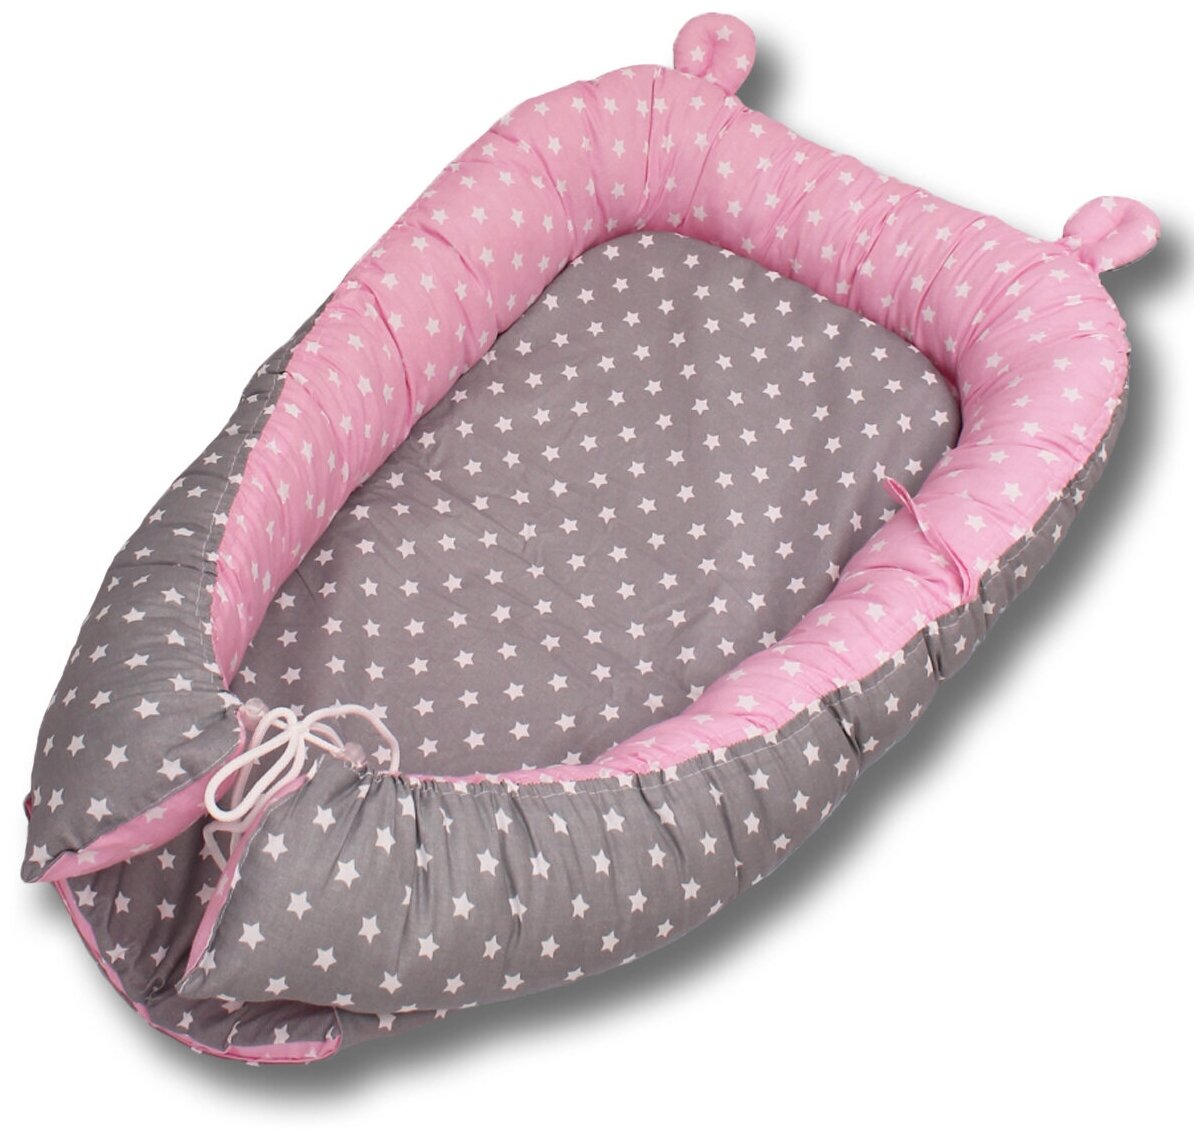 Гнездышко-кокон для новорожденных Body Pillow, расцветка "Звезды комби серо-розовые"